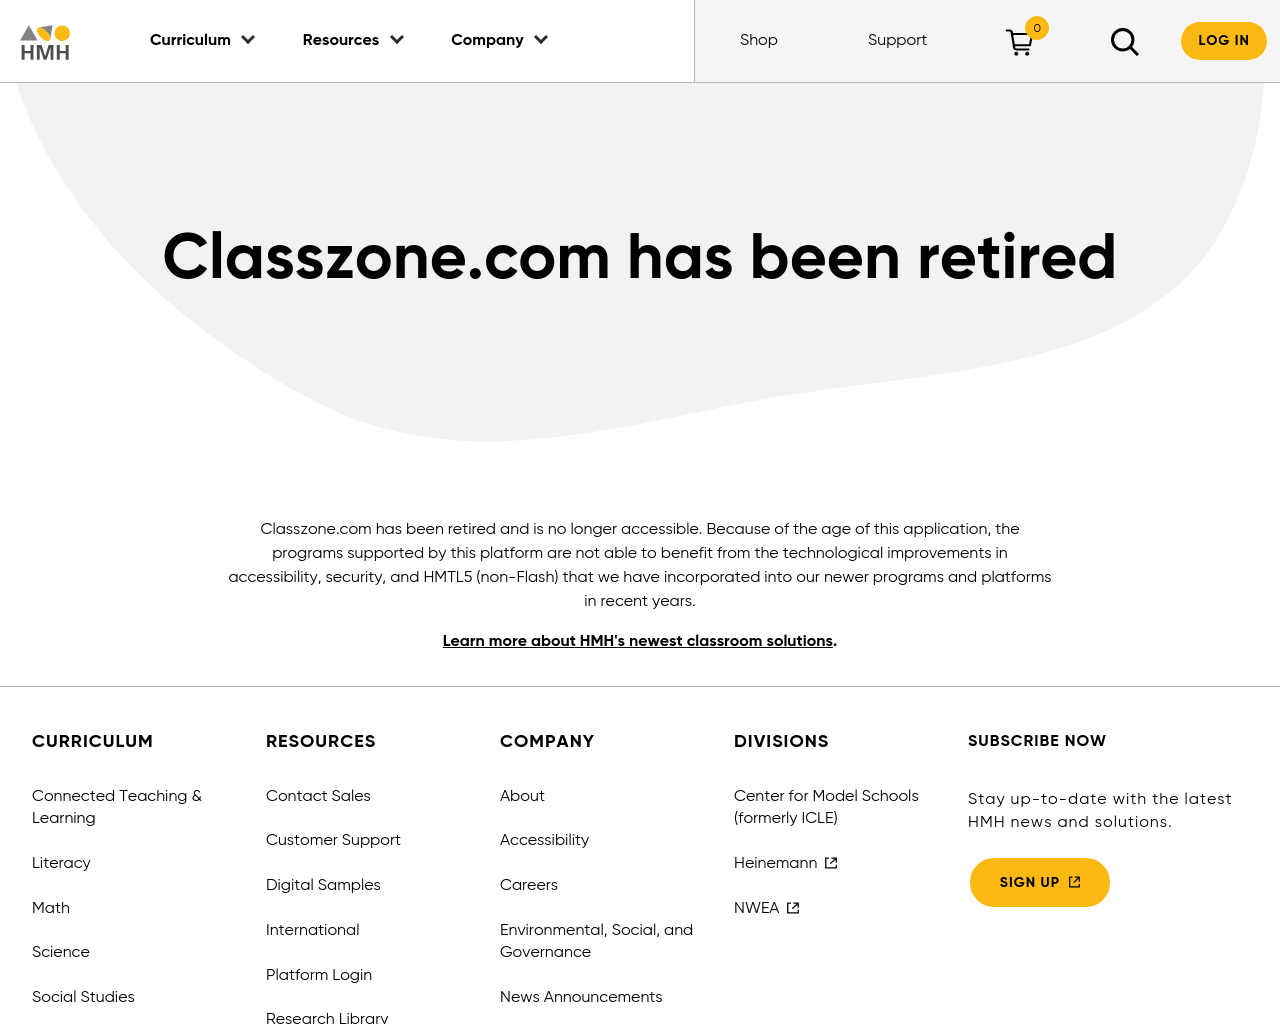 classzone.com